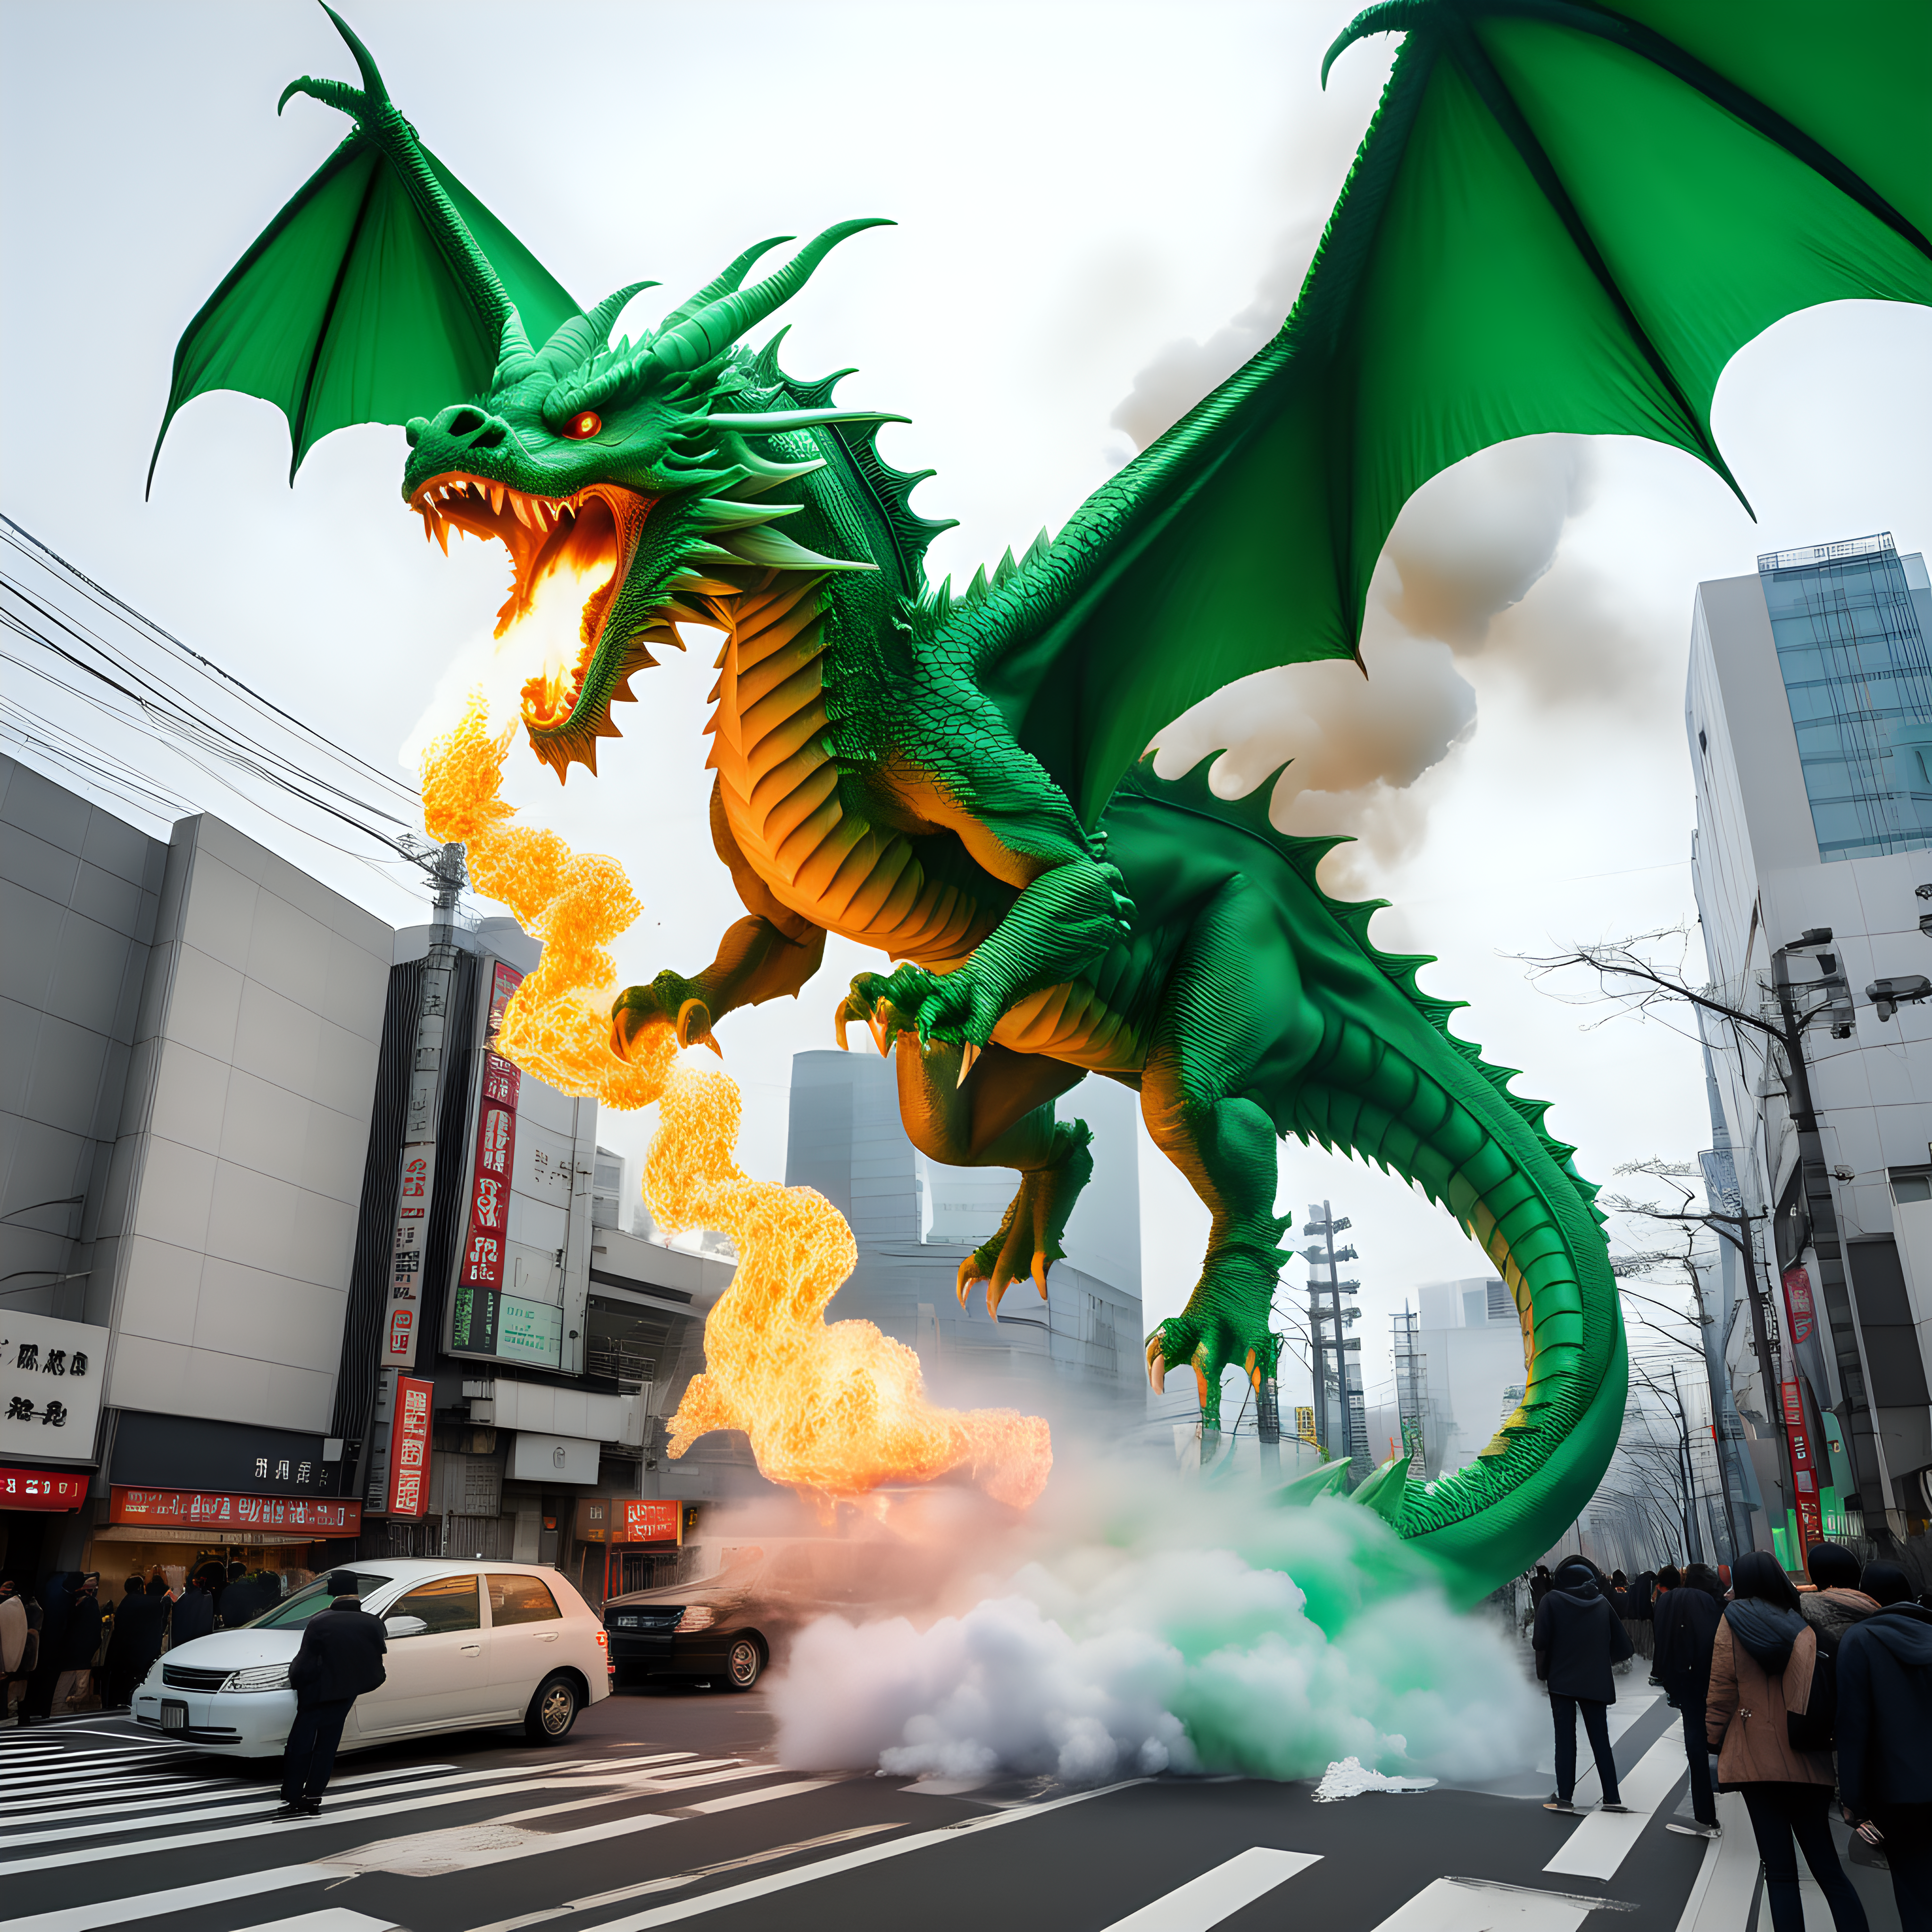 green 2 headed fire breathing dragon destroying Tokyo in winter